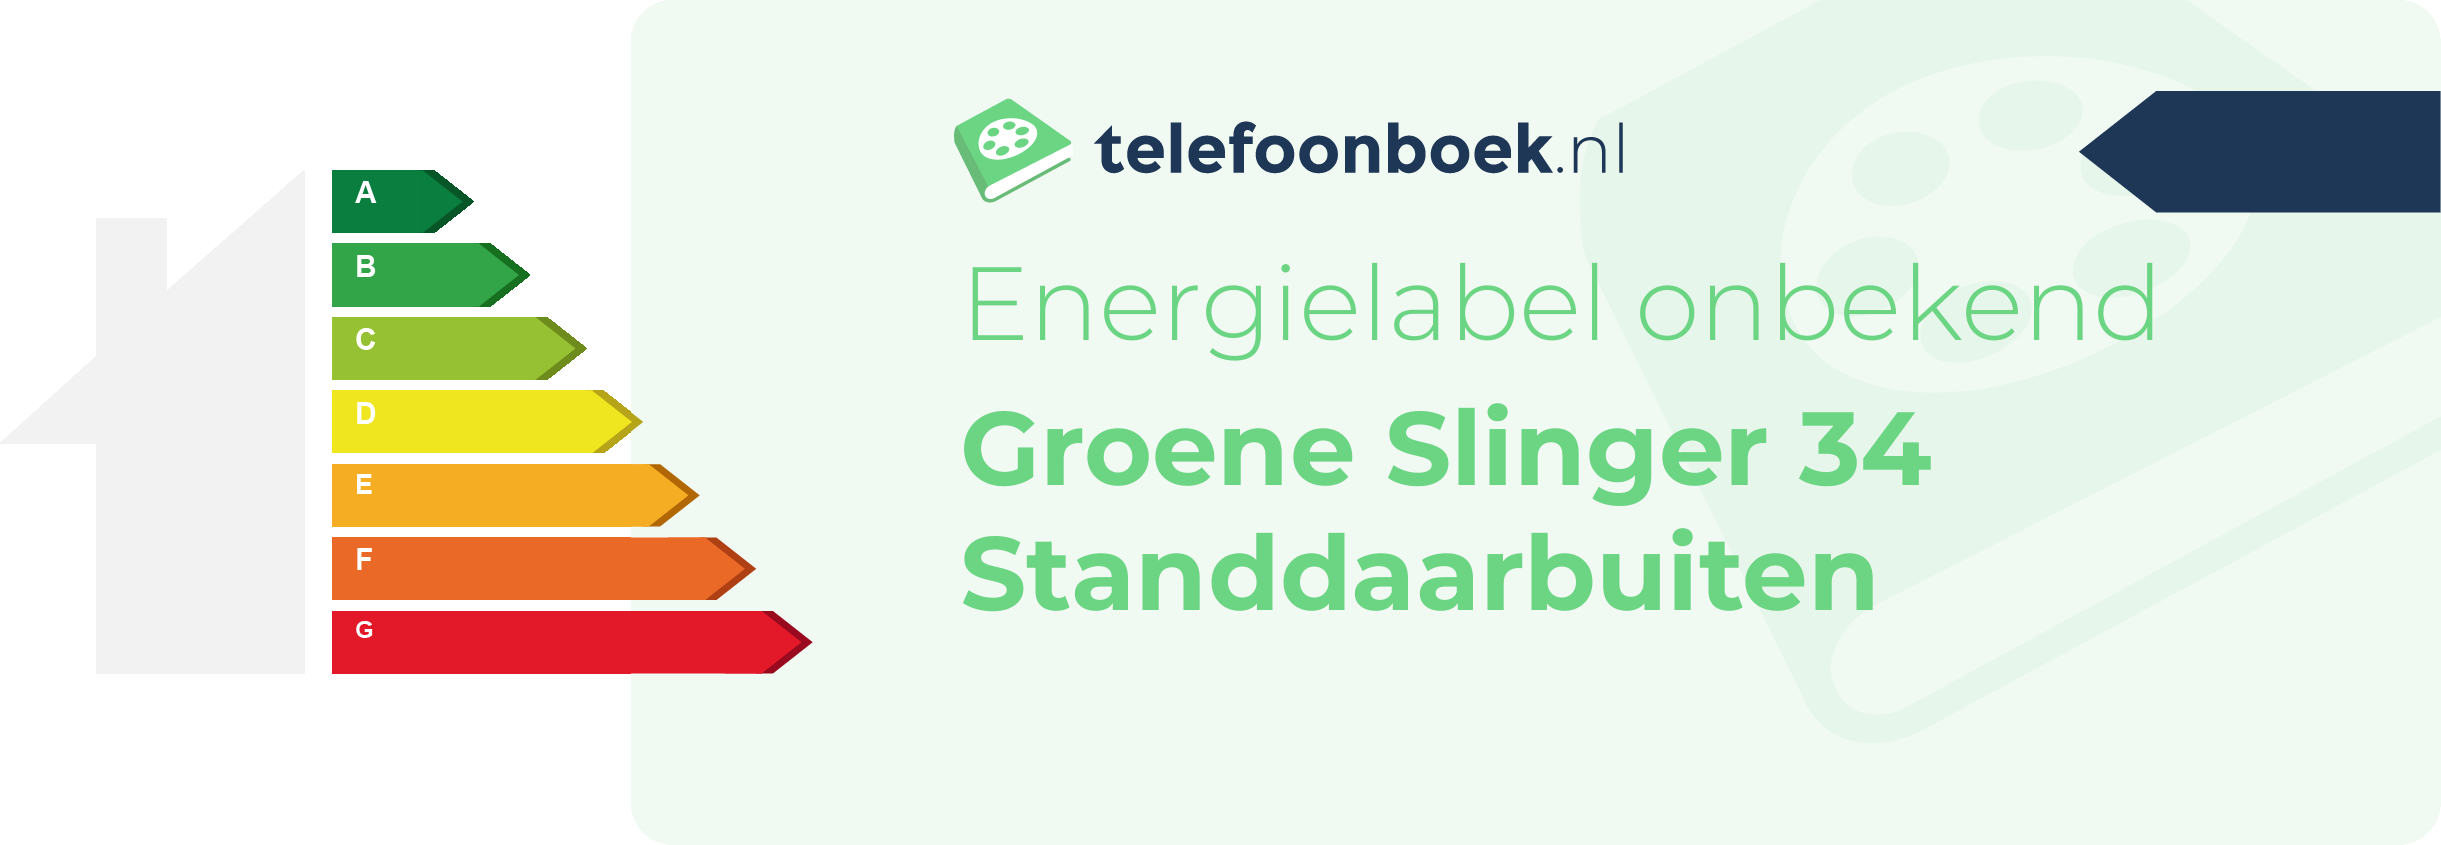 Energielabel Groene Slinger 34 Standdaarbuiten